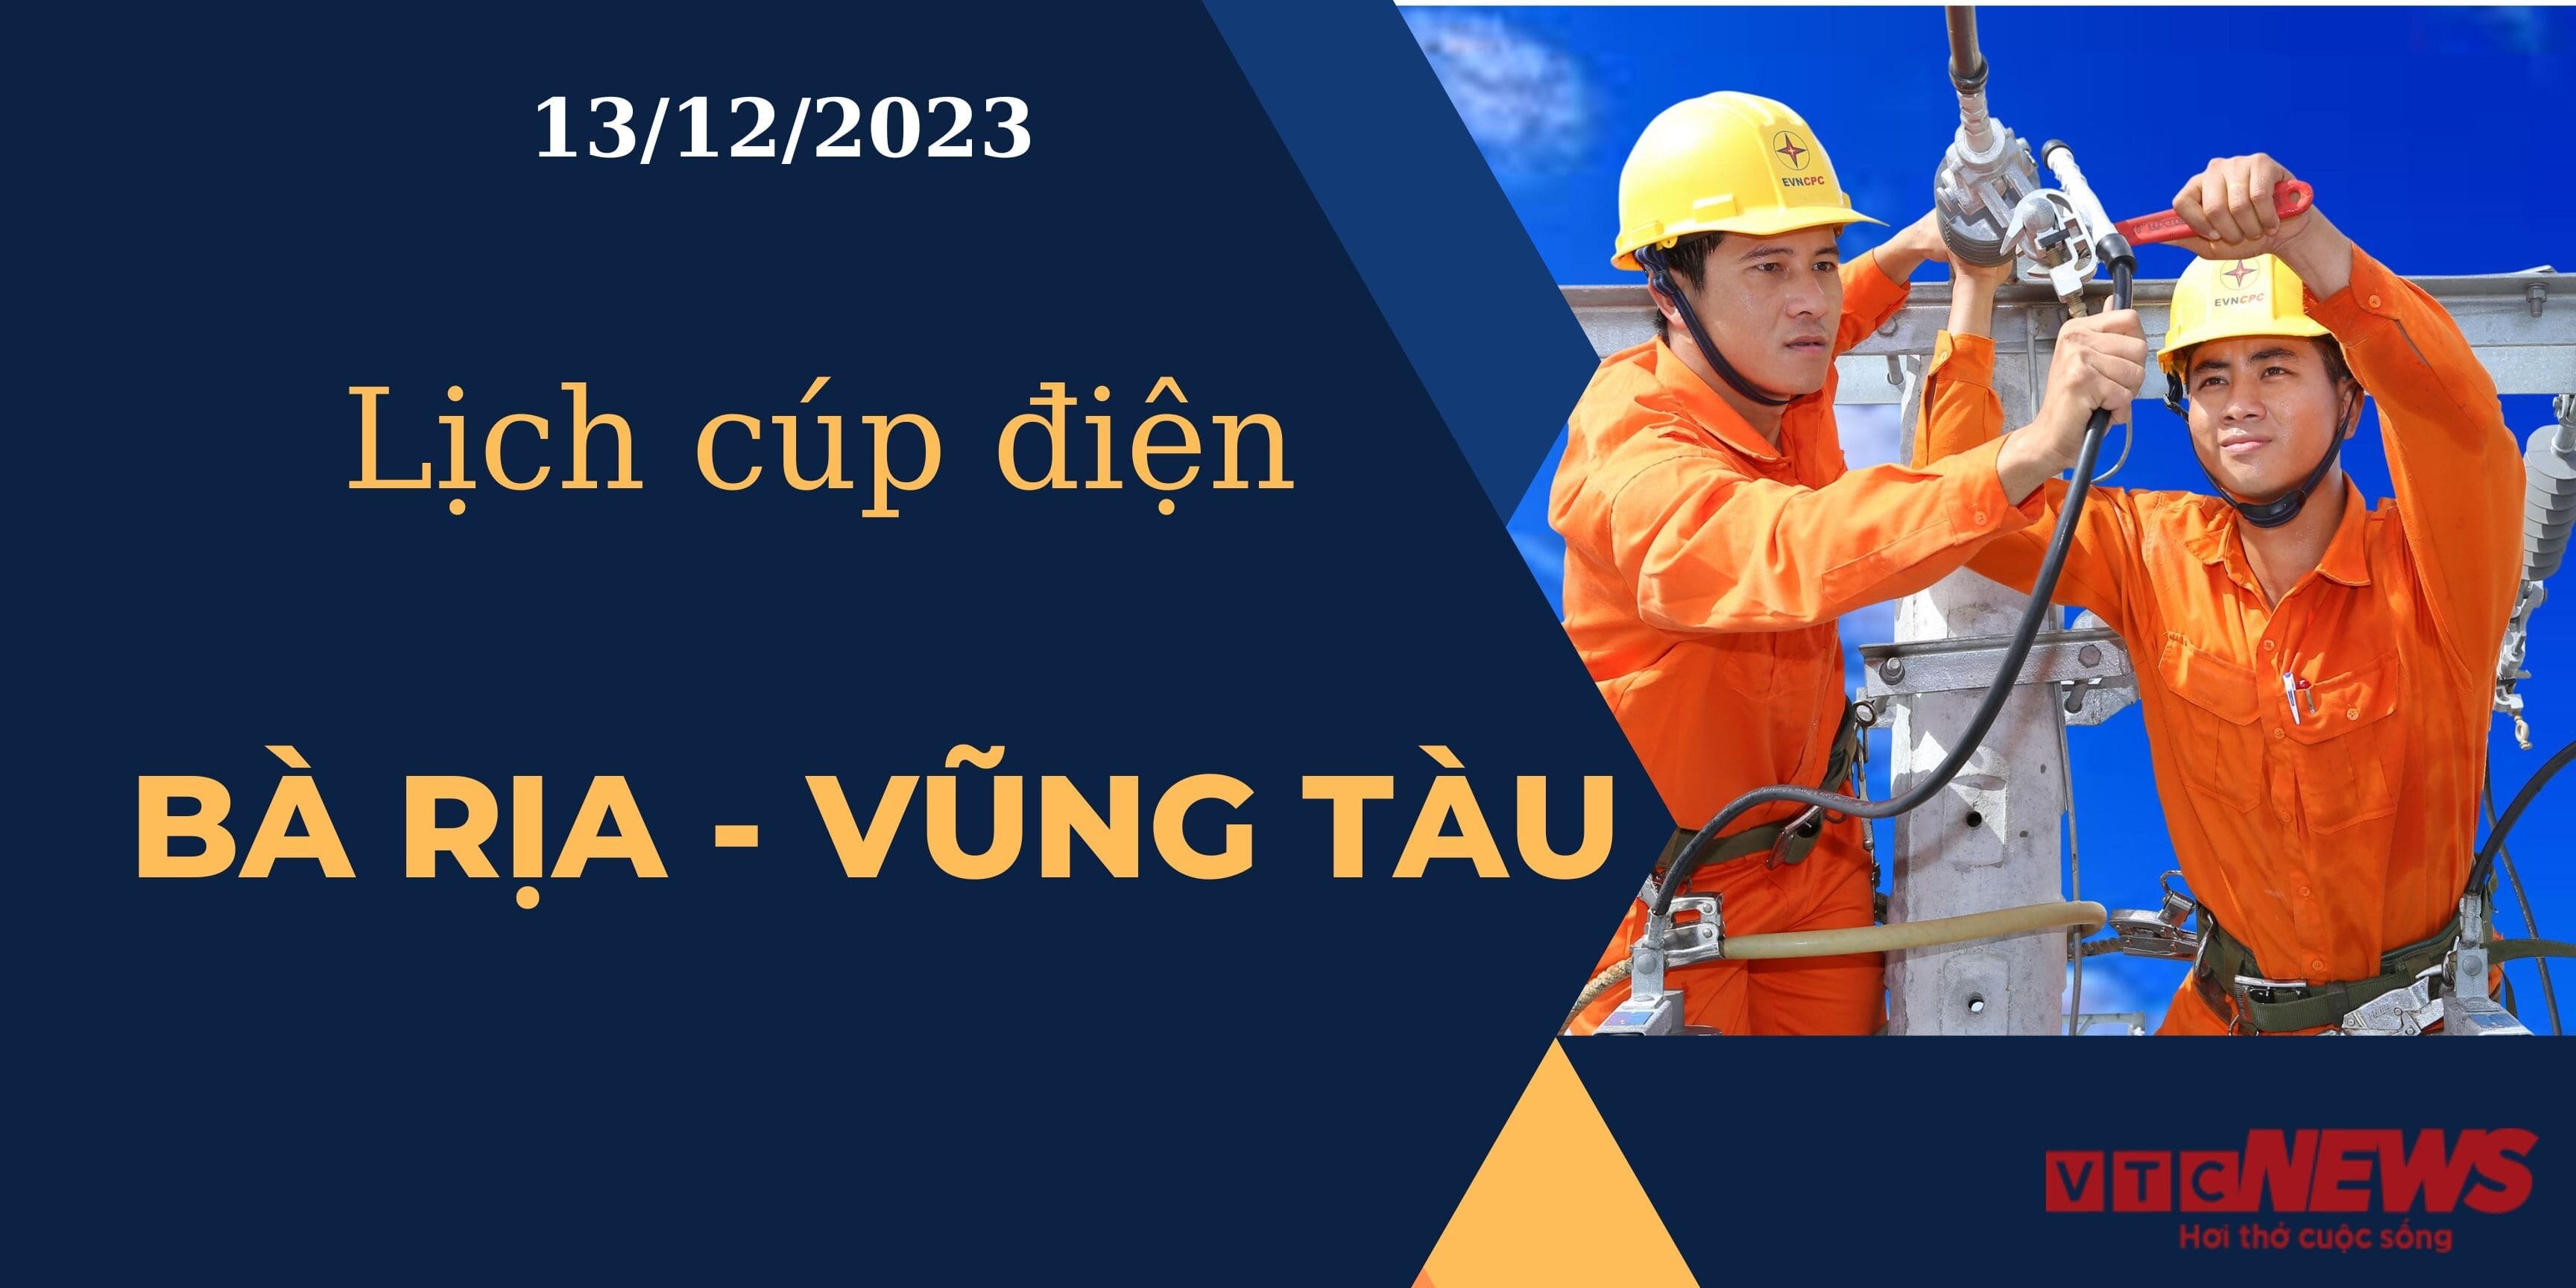 Lịch cúp điện hôm nay tại Bà Rịa - Vũng Tàu ngày 13/12/2023